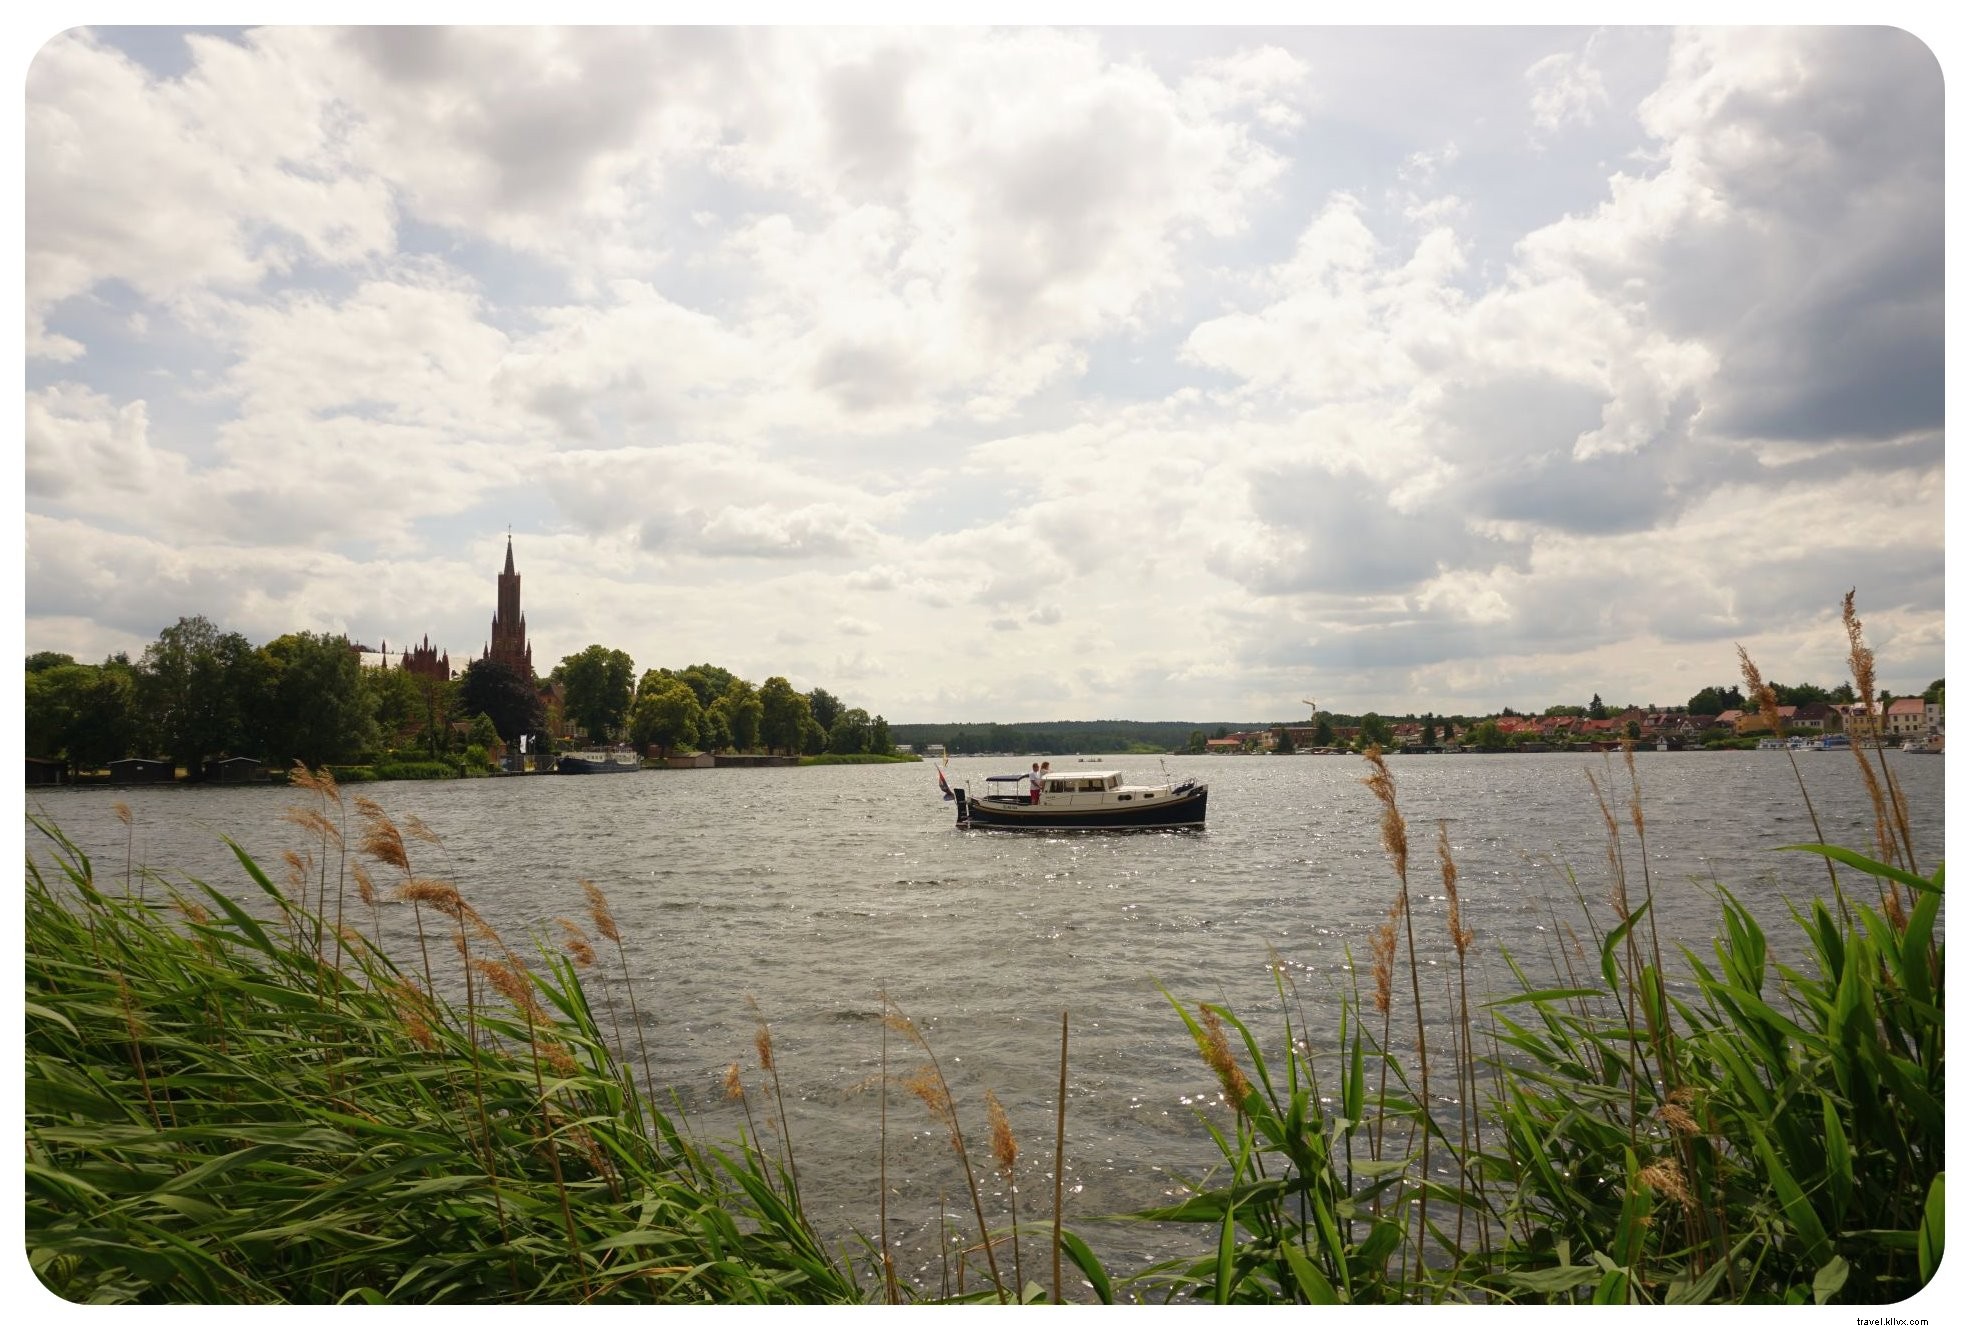 Lagos, Castelos e praias:uma viagem de carro ao norte da Alemanha